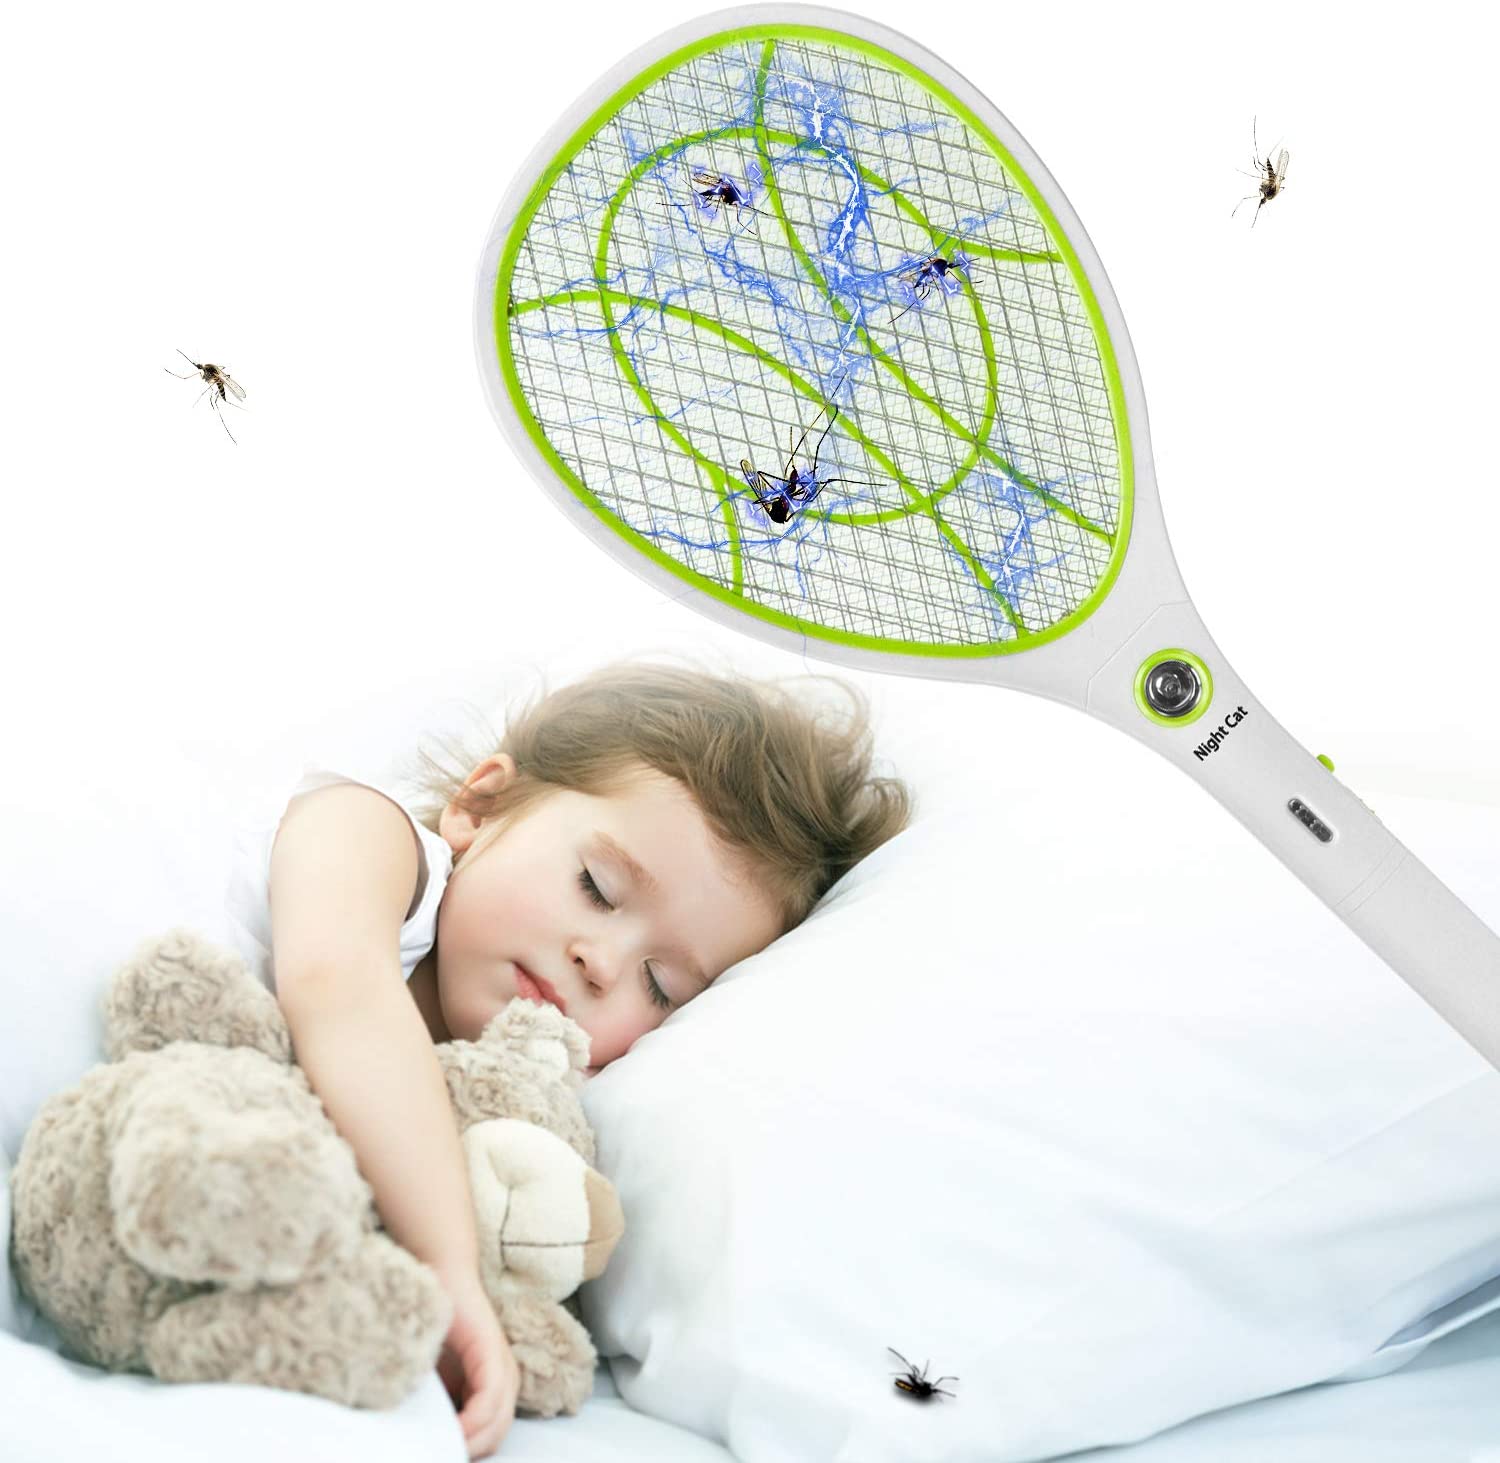 灭蚊神手LED照明电蚊拍,再也不怕蚊子嗡嗡叫了!